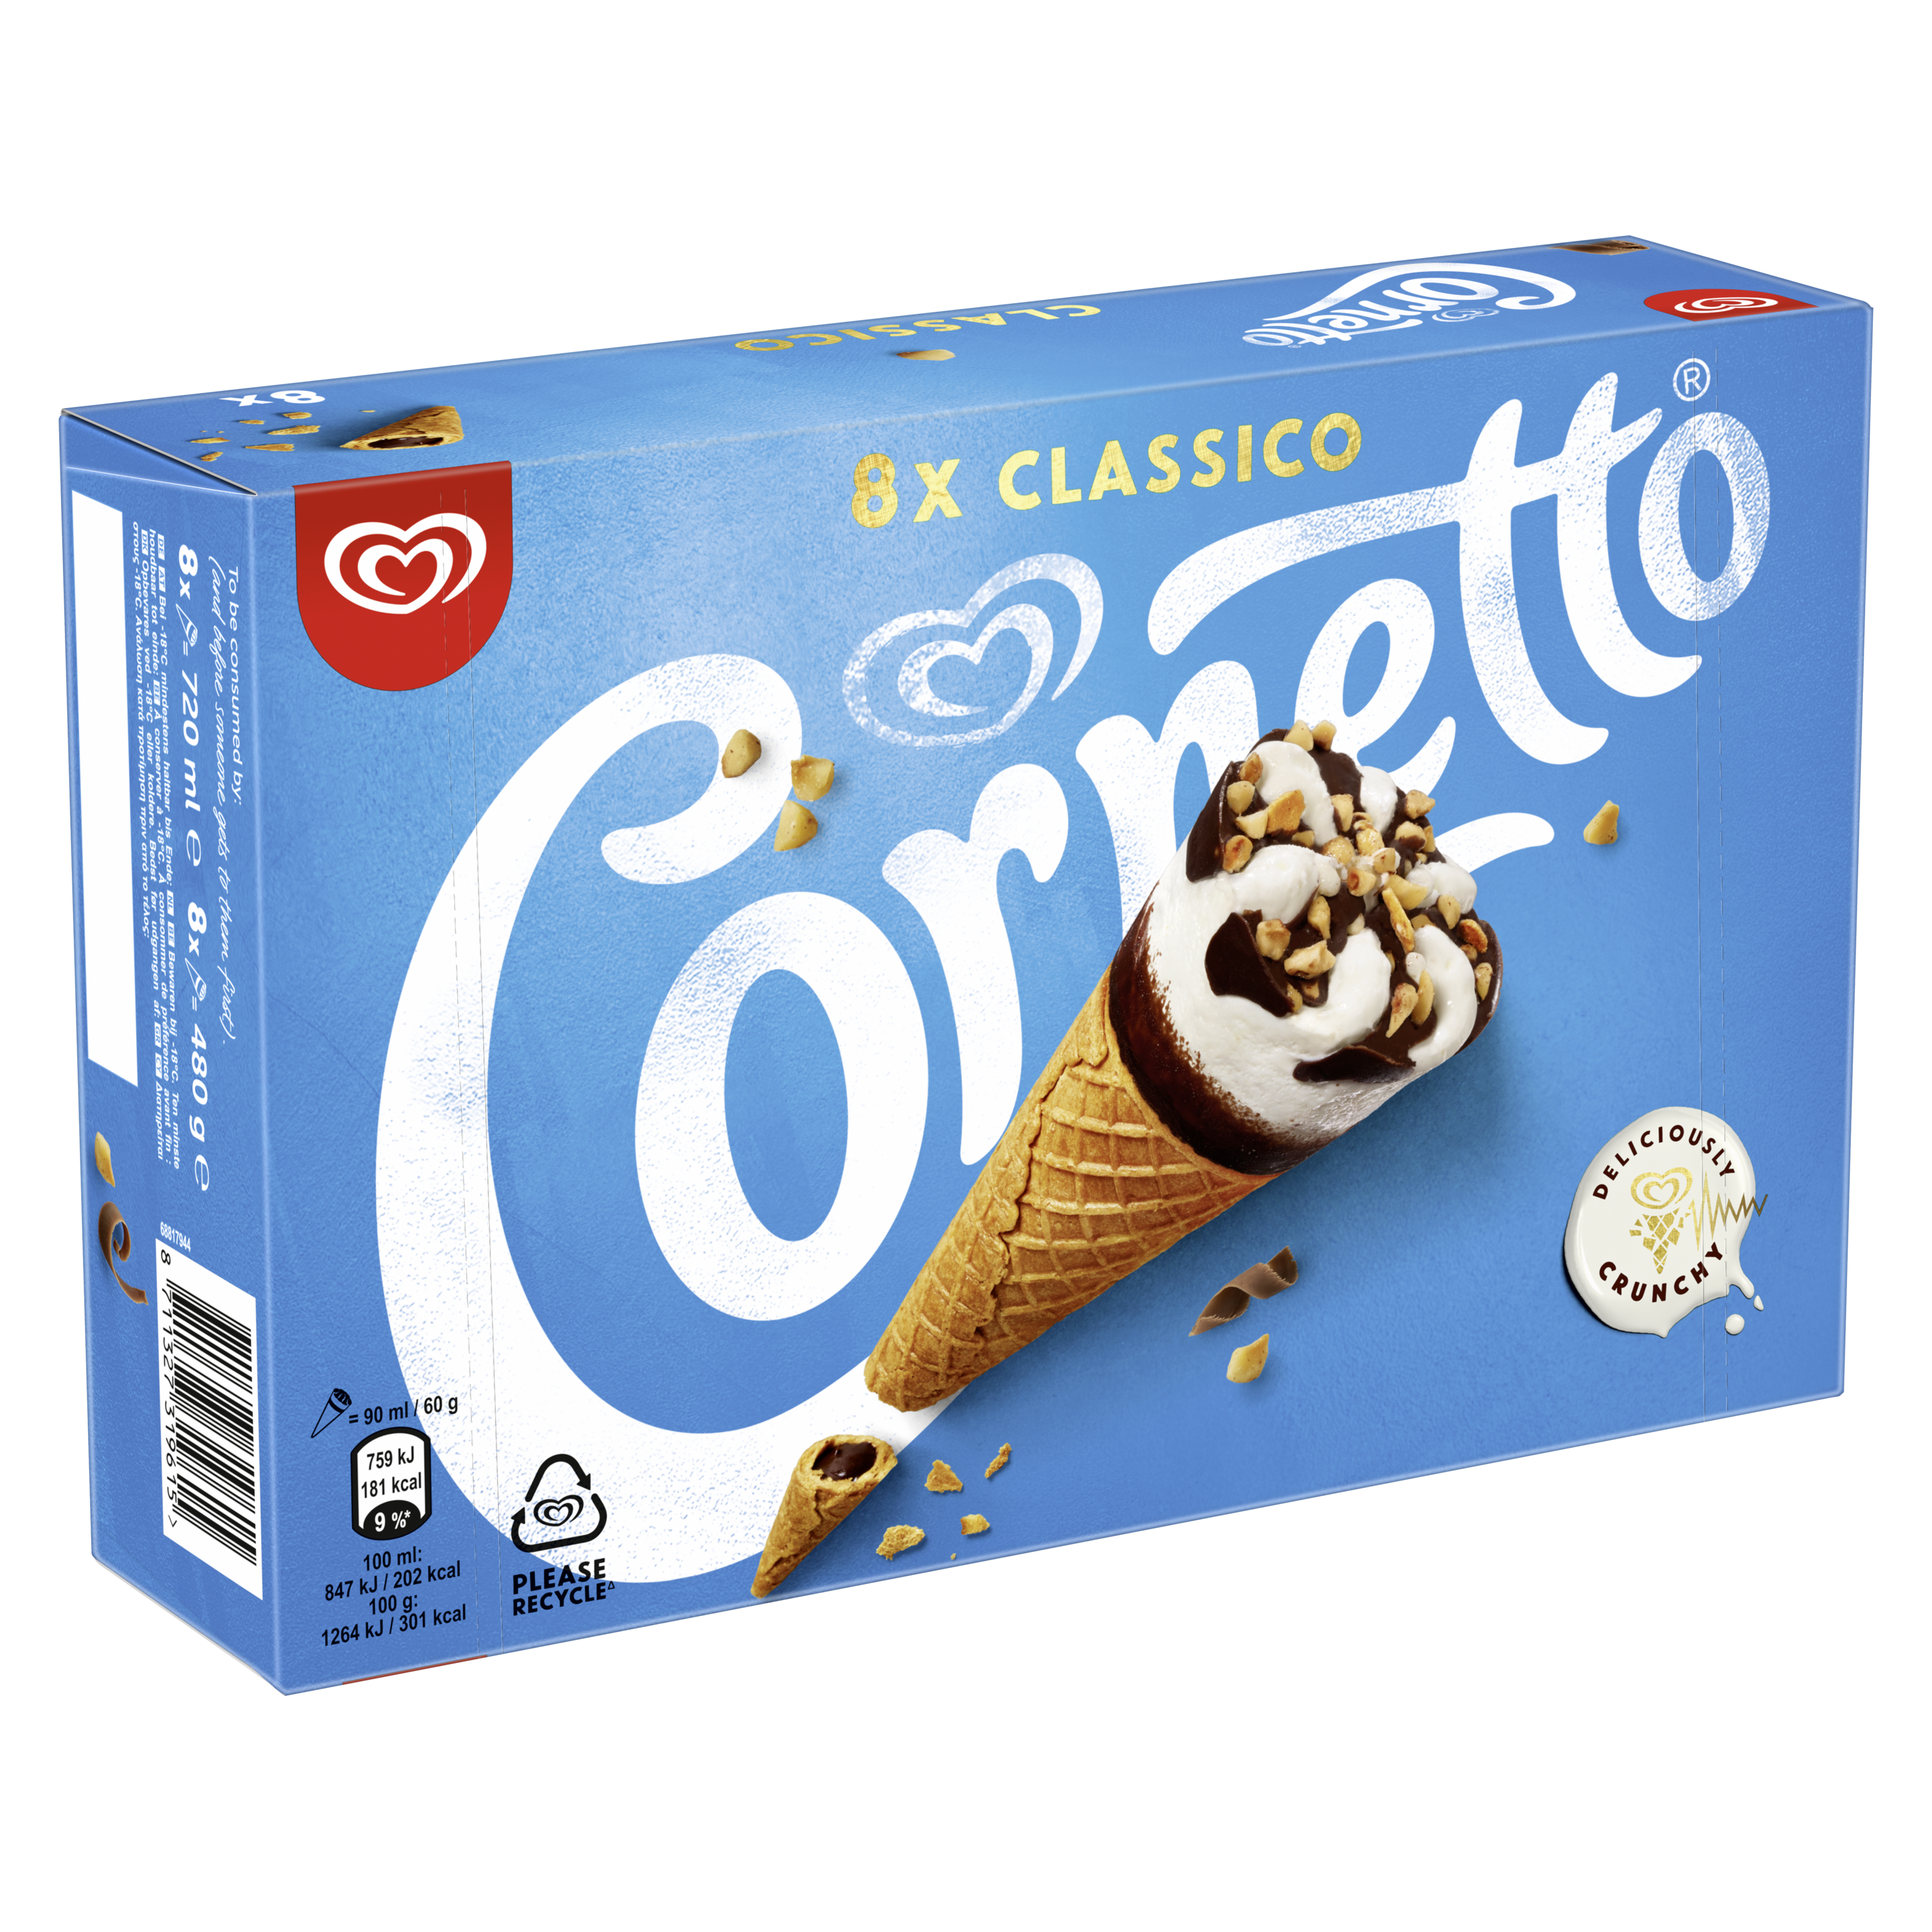 Cornetto Classico 8-pak